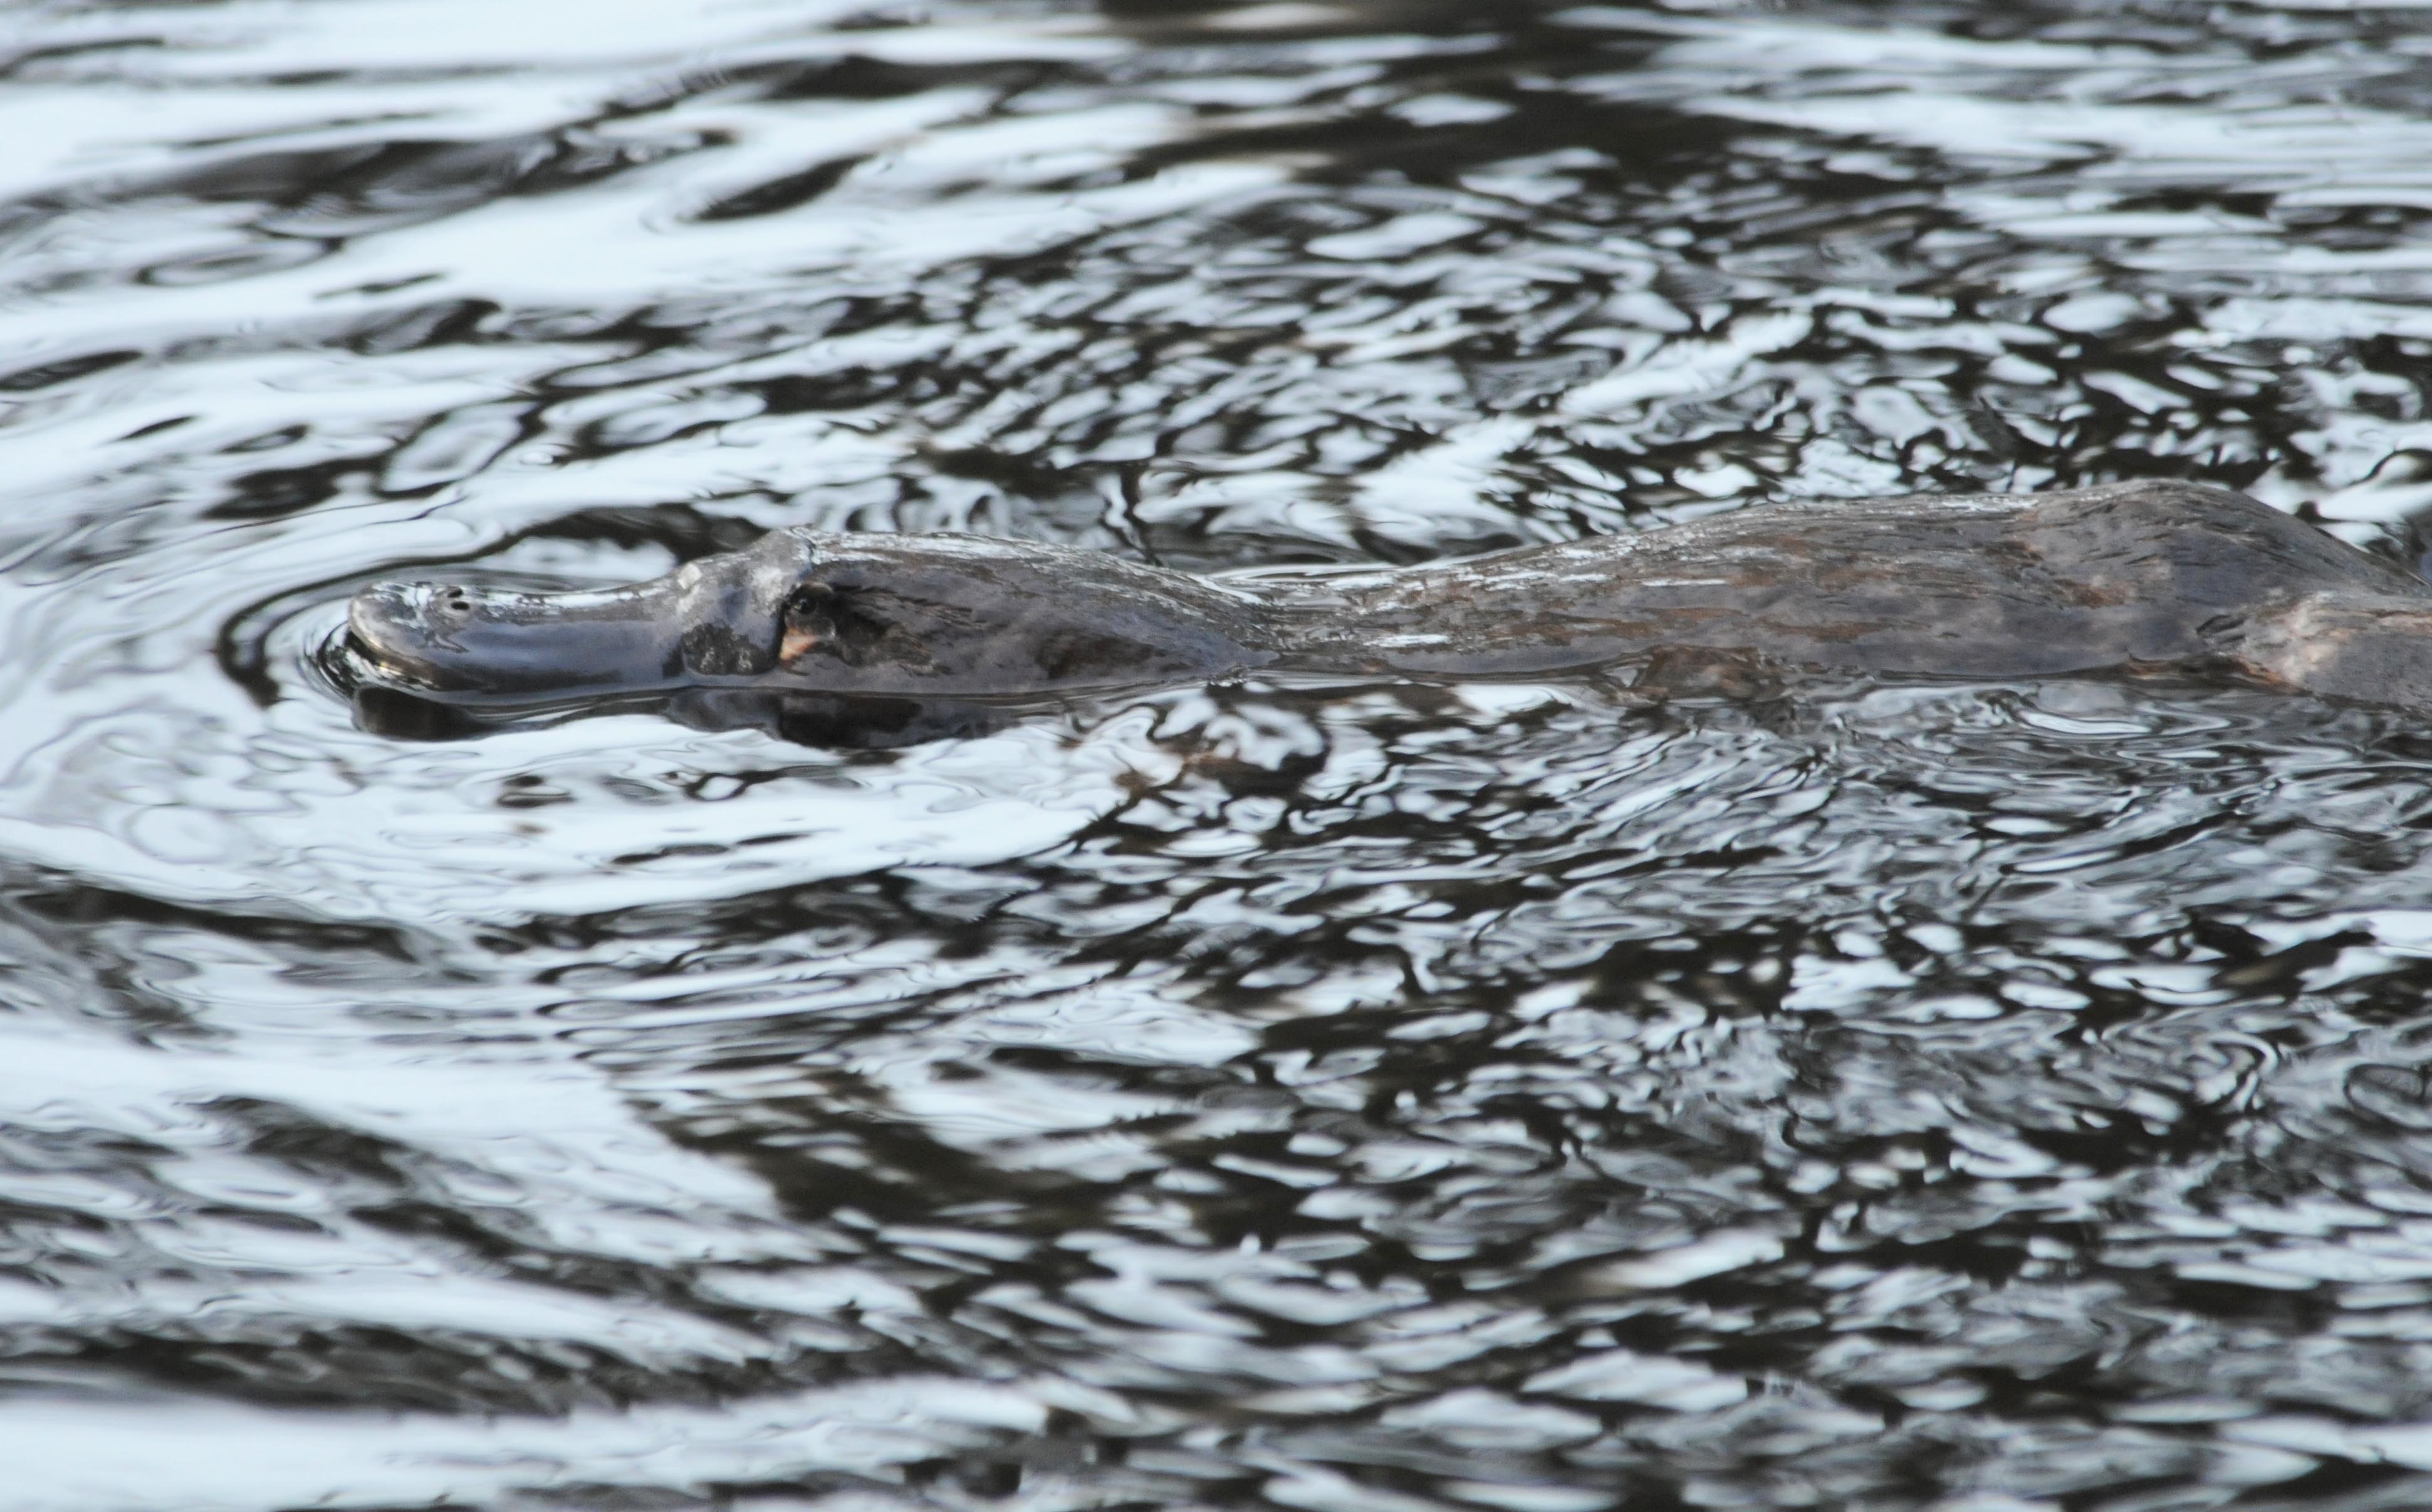  Duck-billed platypus